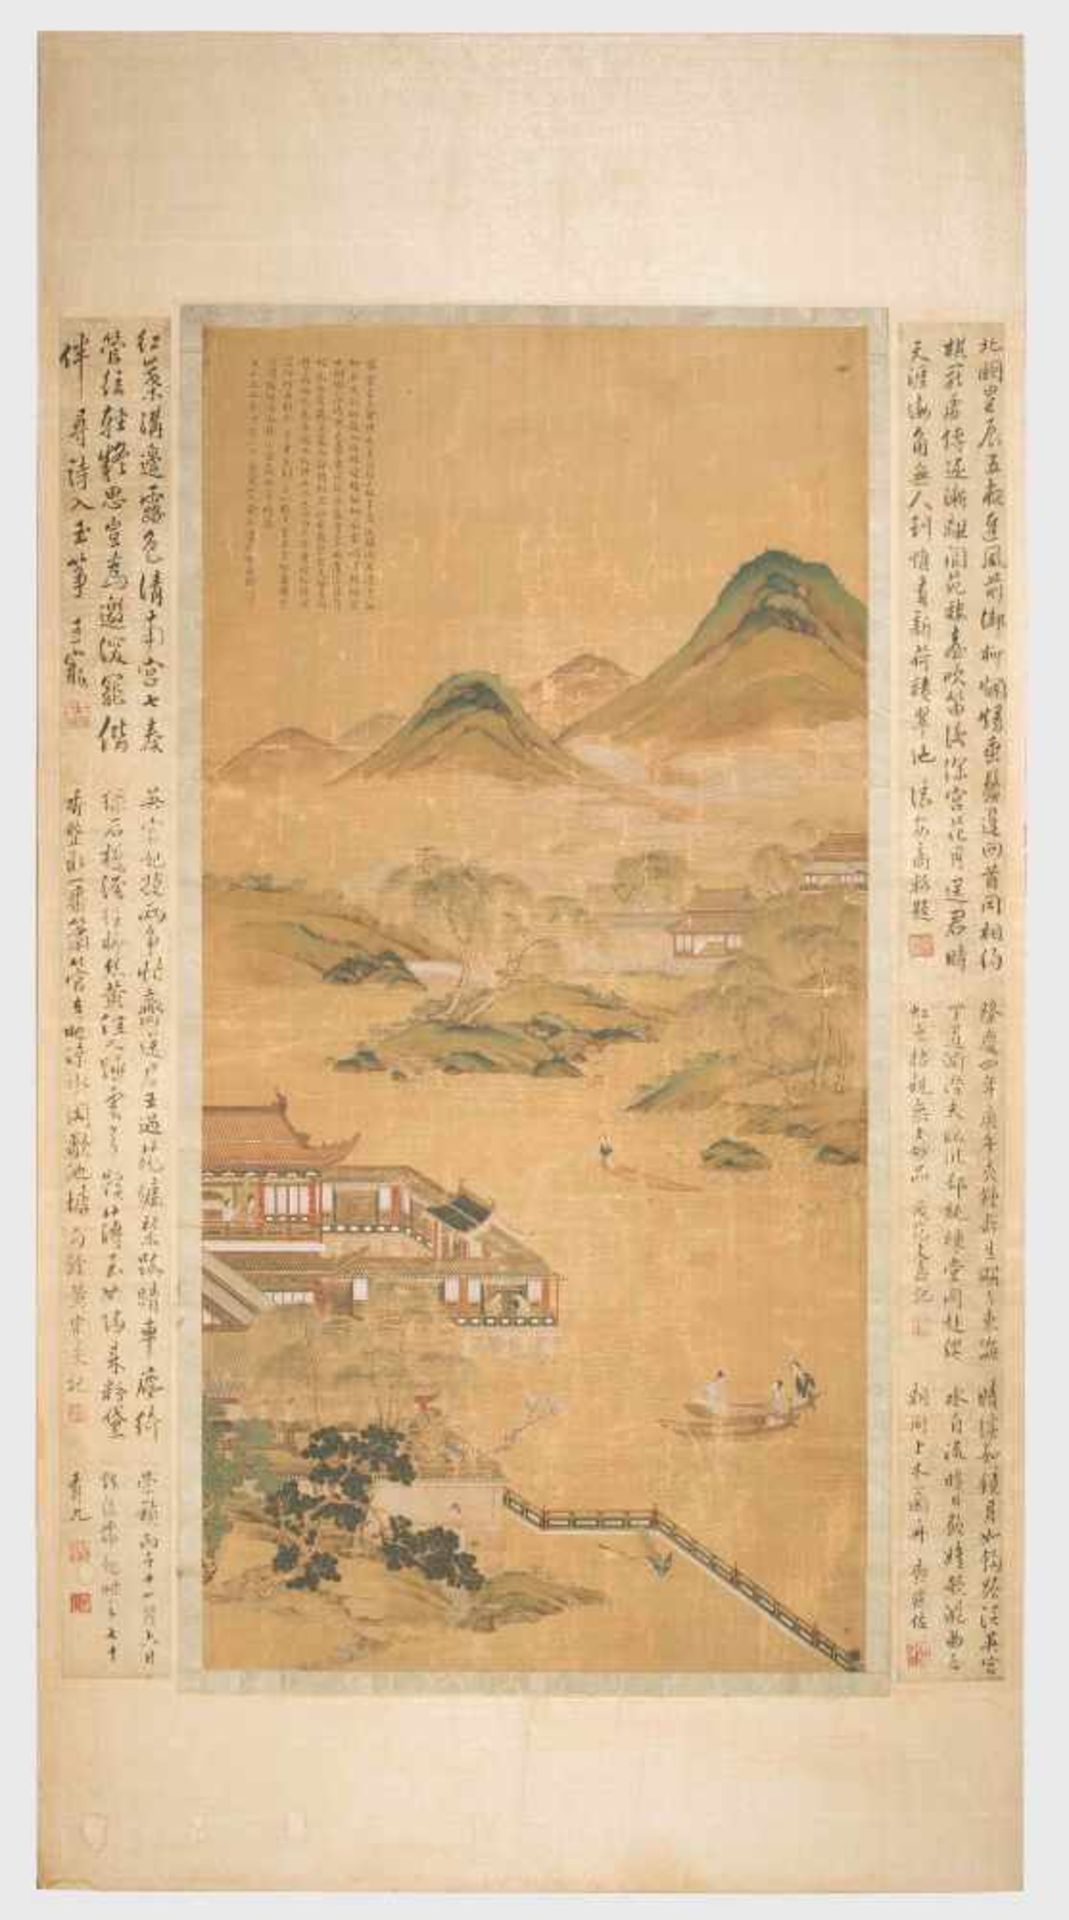 Malerei im Stil von Zhao Boju (c.1120–c.1185)China, Qing-Dynastie. Tusche und Farben auf Seide.